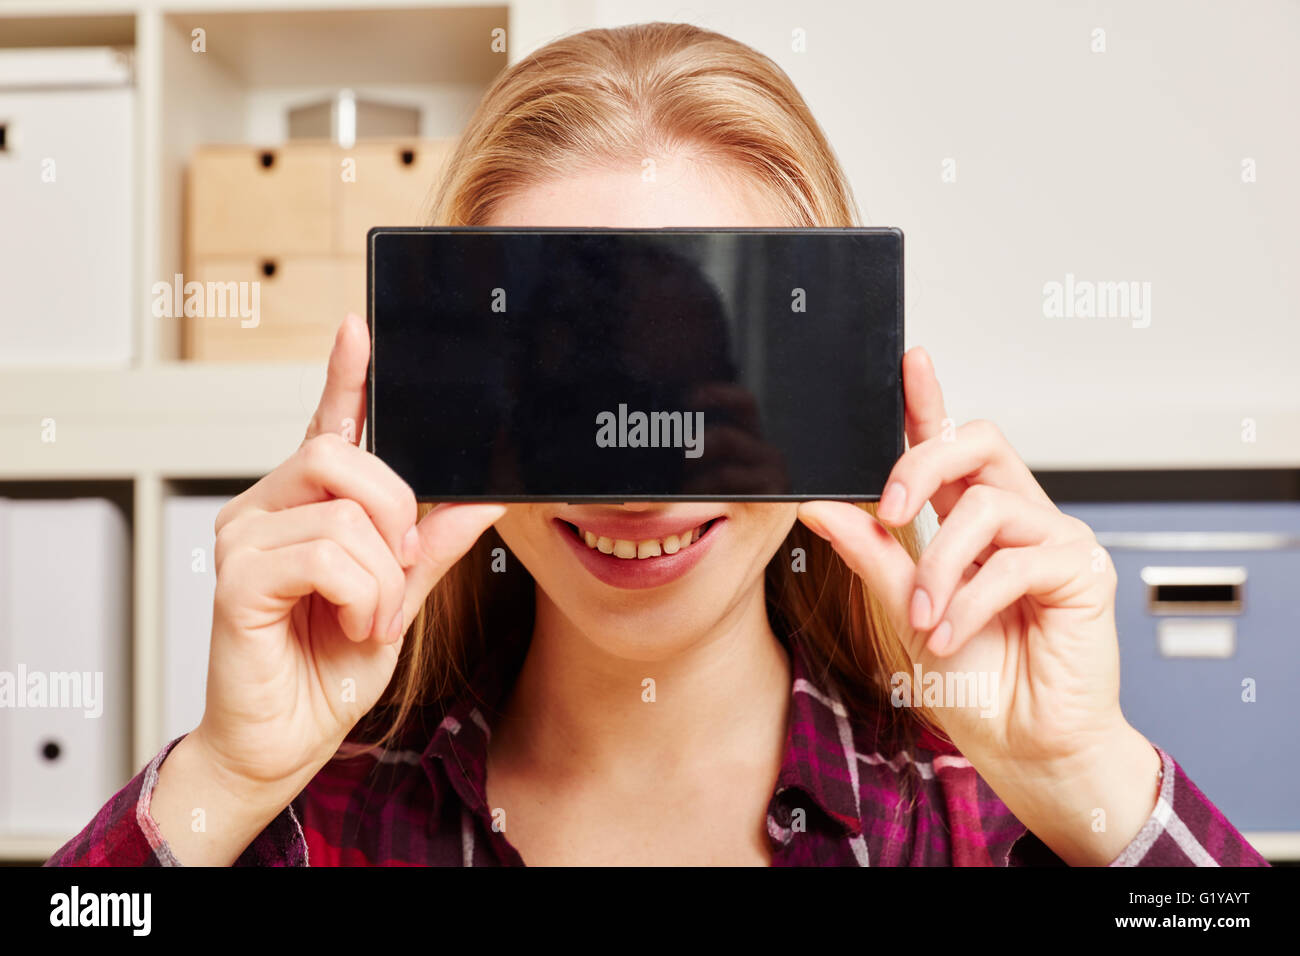 Lächelnde Frau hält eine Smartphone mit einem schwarzen Touchscreen vor den Kopf Stockfoto